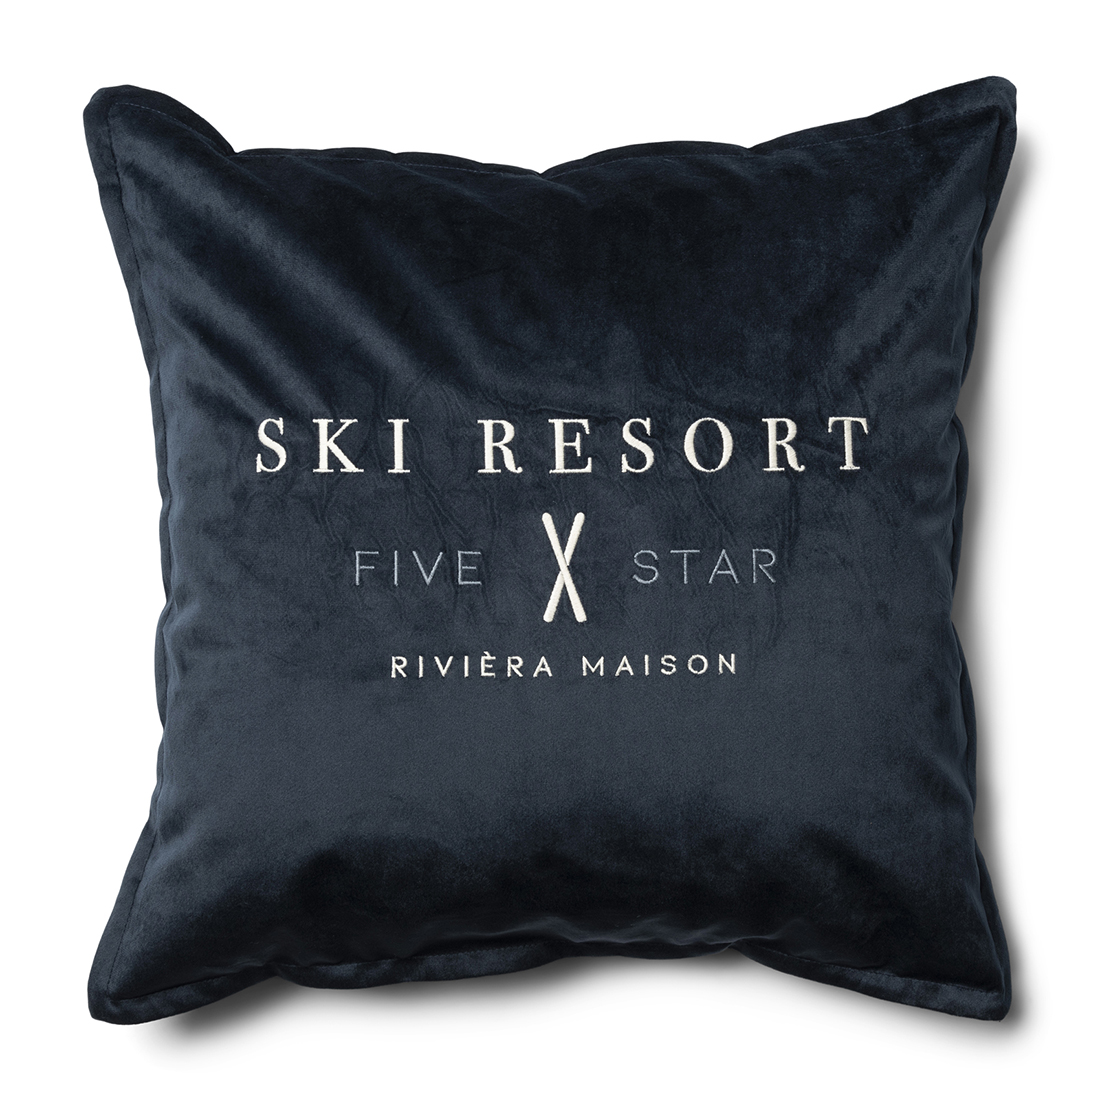 Riviera Maison Kussenhoes, Sierkussen velvet met tekst - RM Ski Resort, Kussensloop 50x50 - Blauw